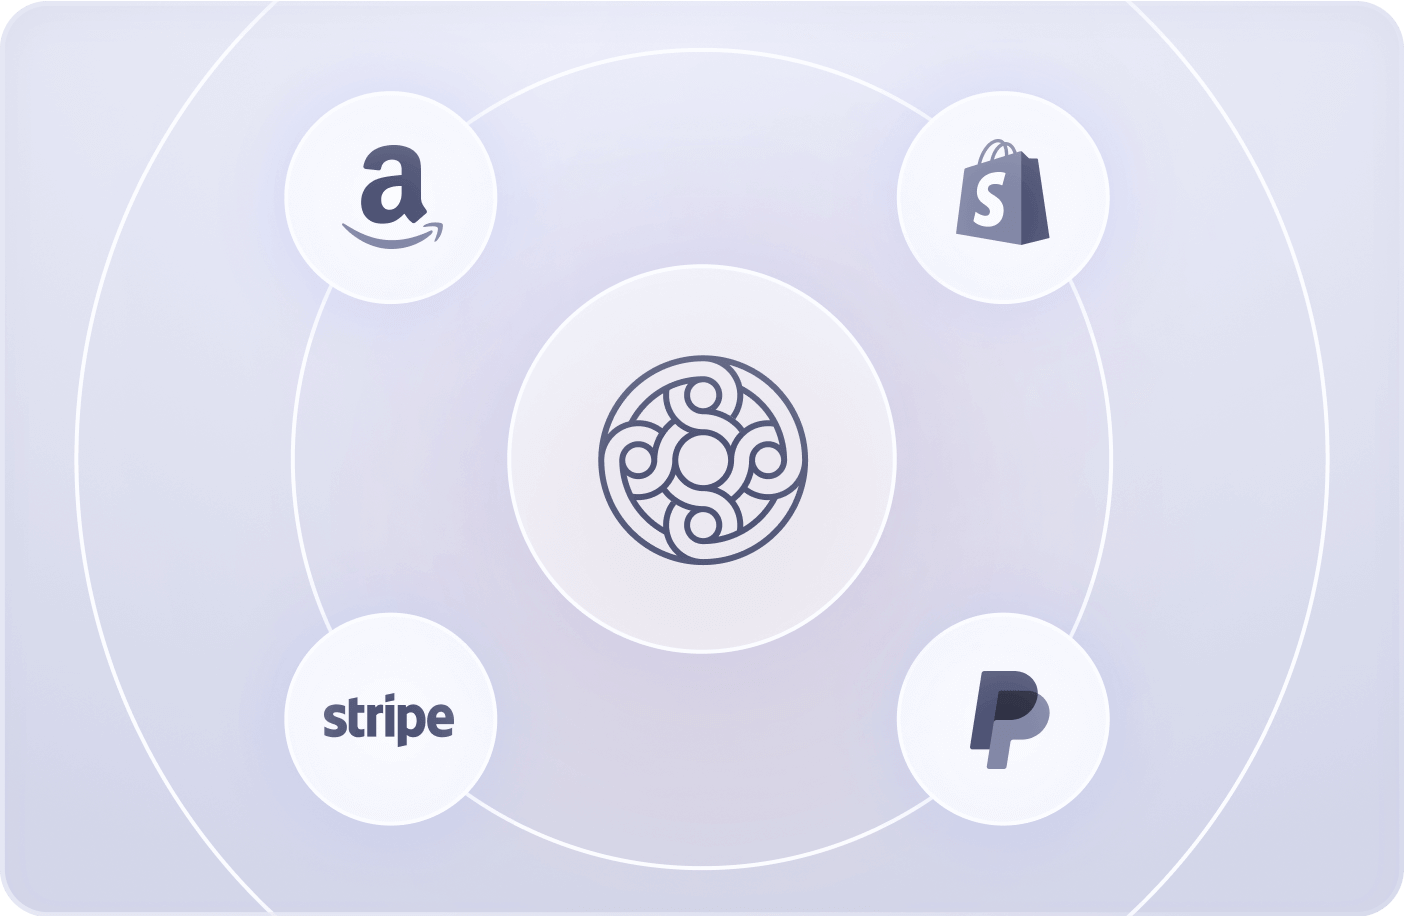 Amazon, Stripe, Shopify, and Paypal logos orbiting around the Mercury logo